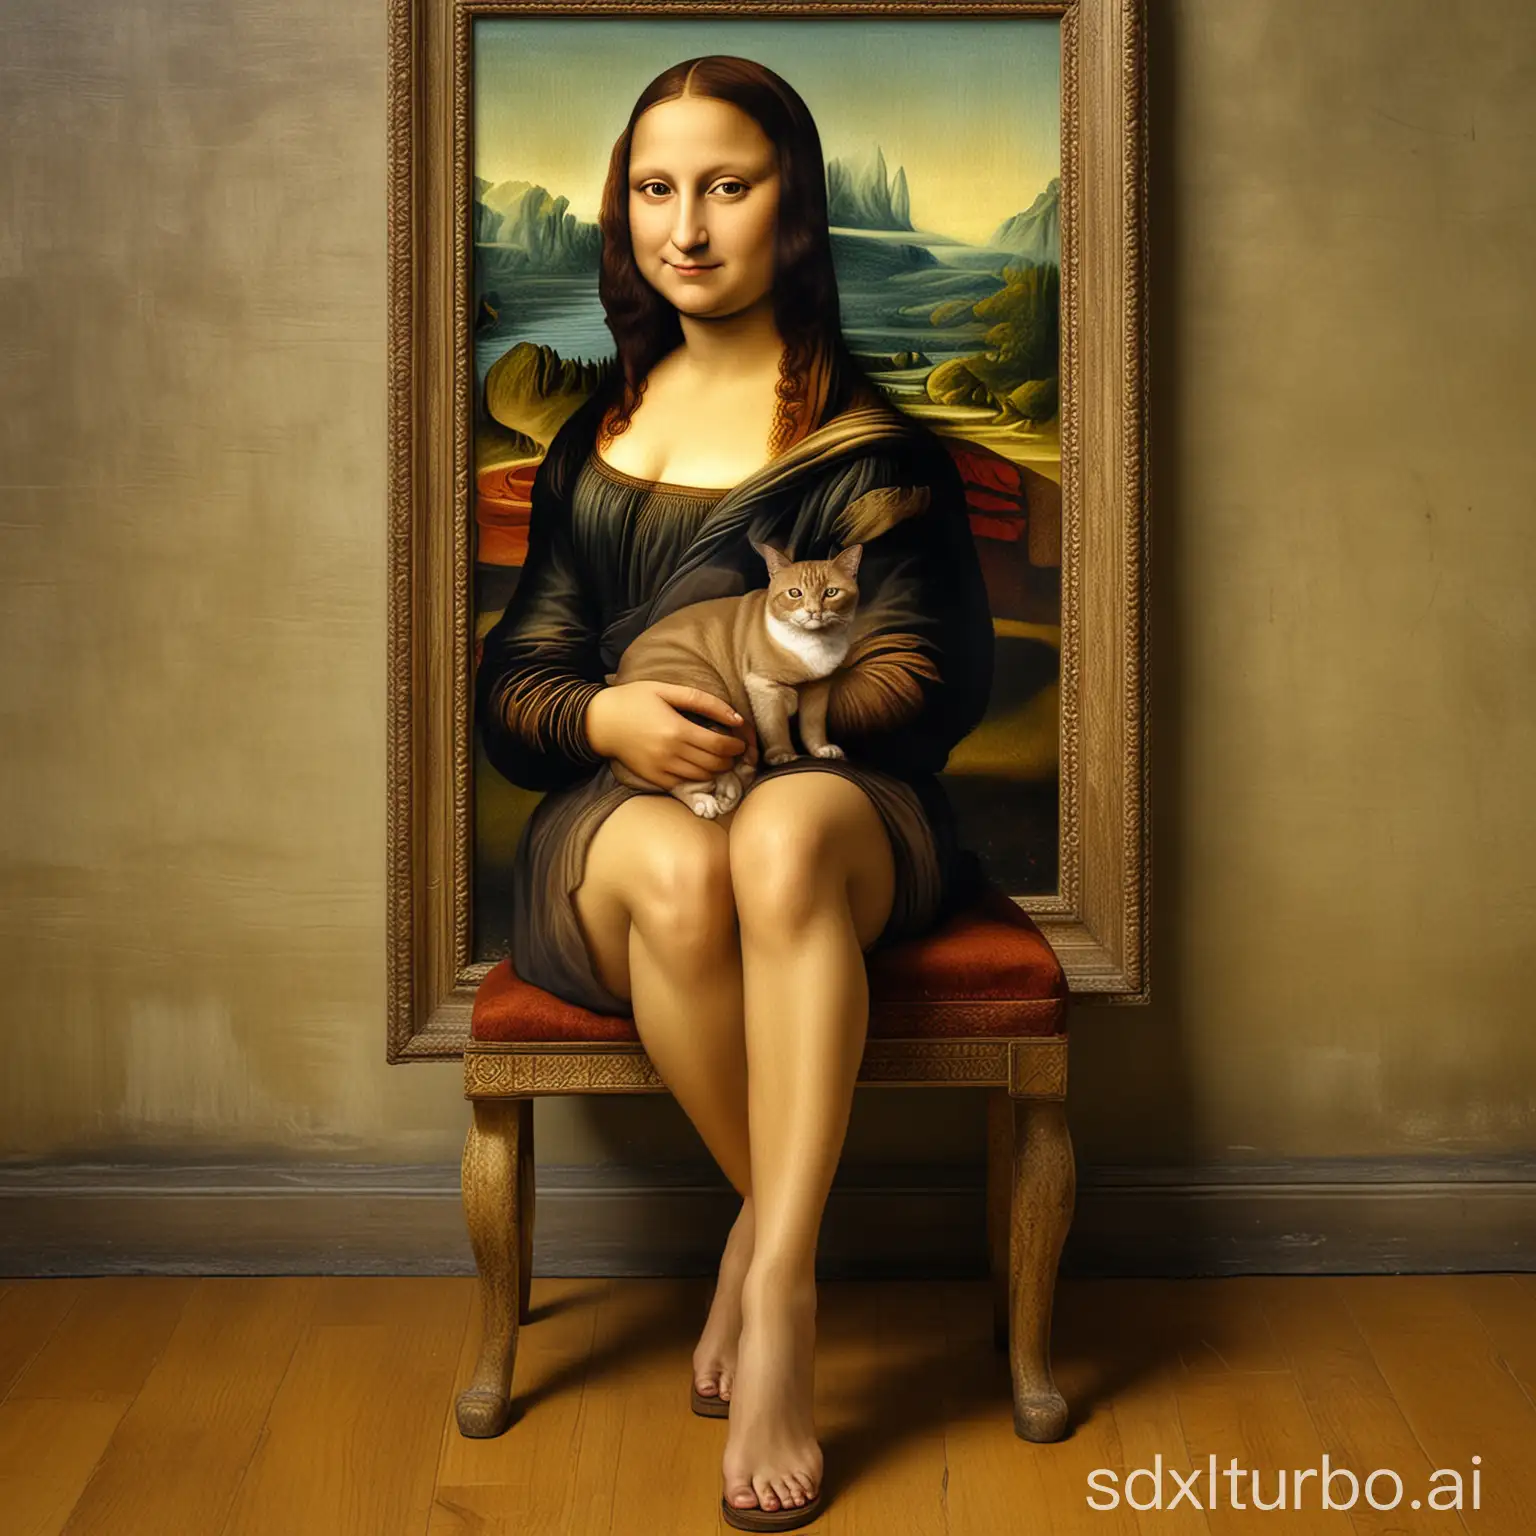 Mona Lisa with legs